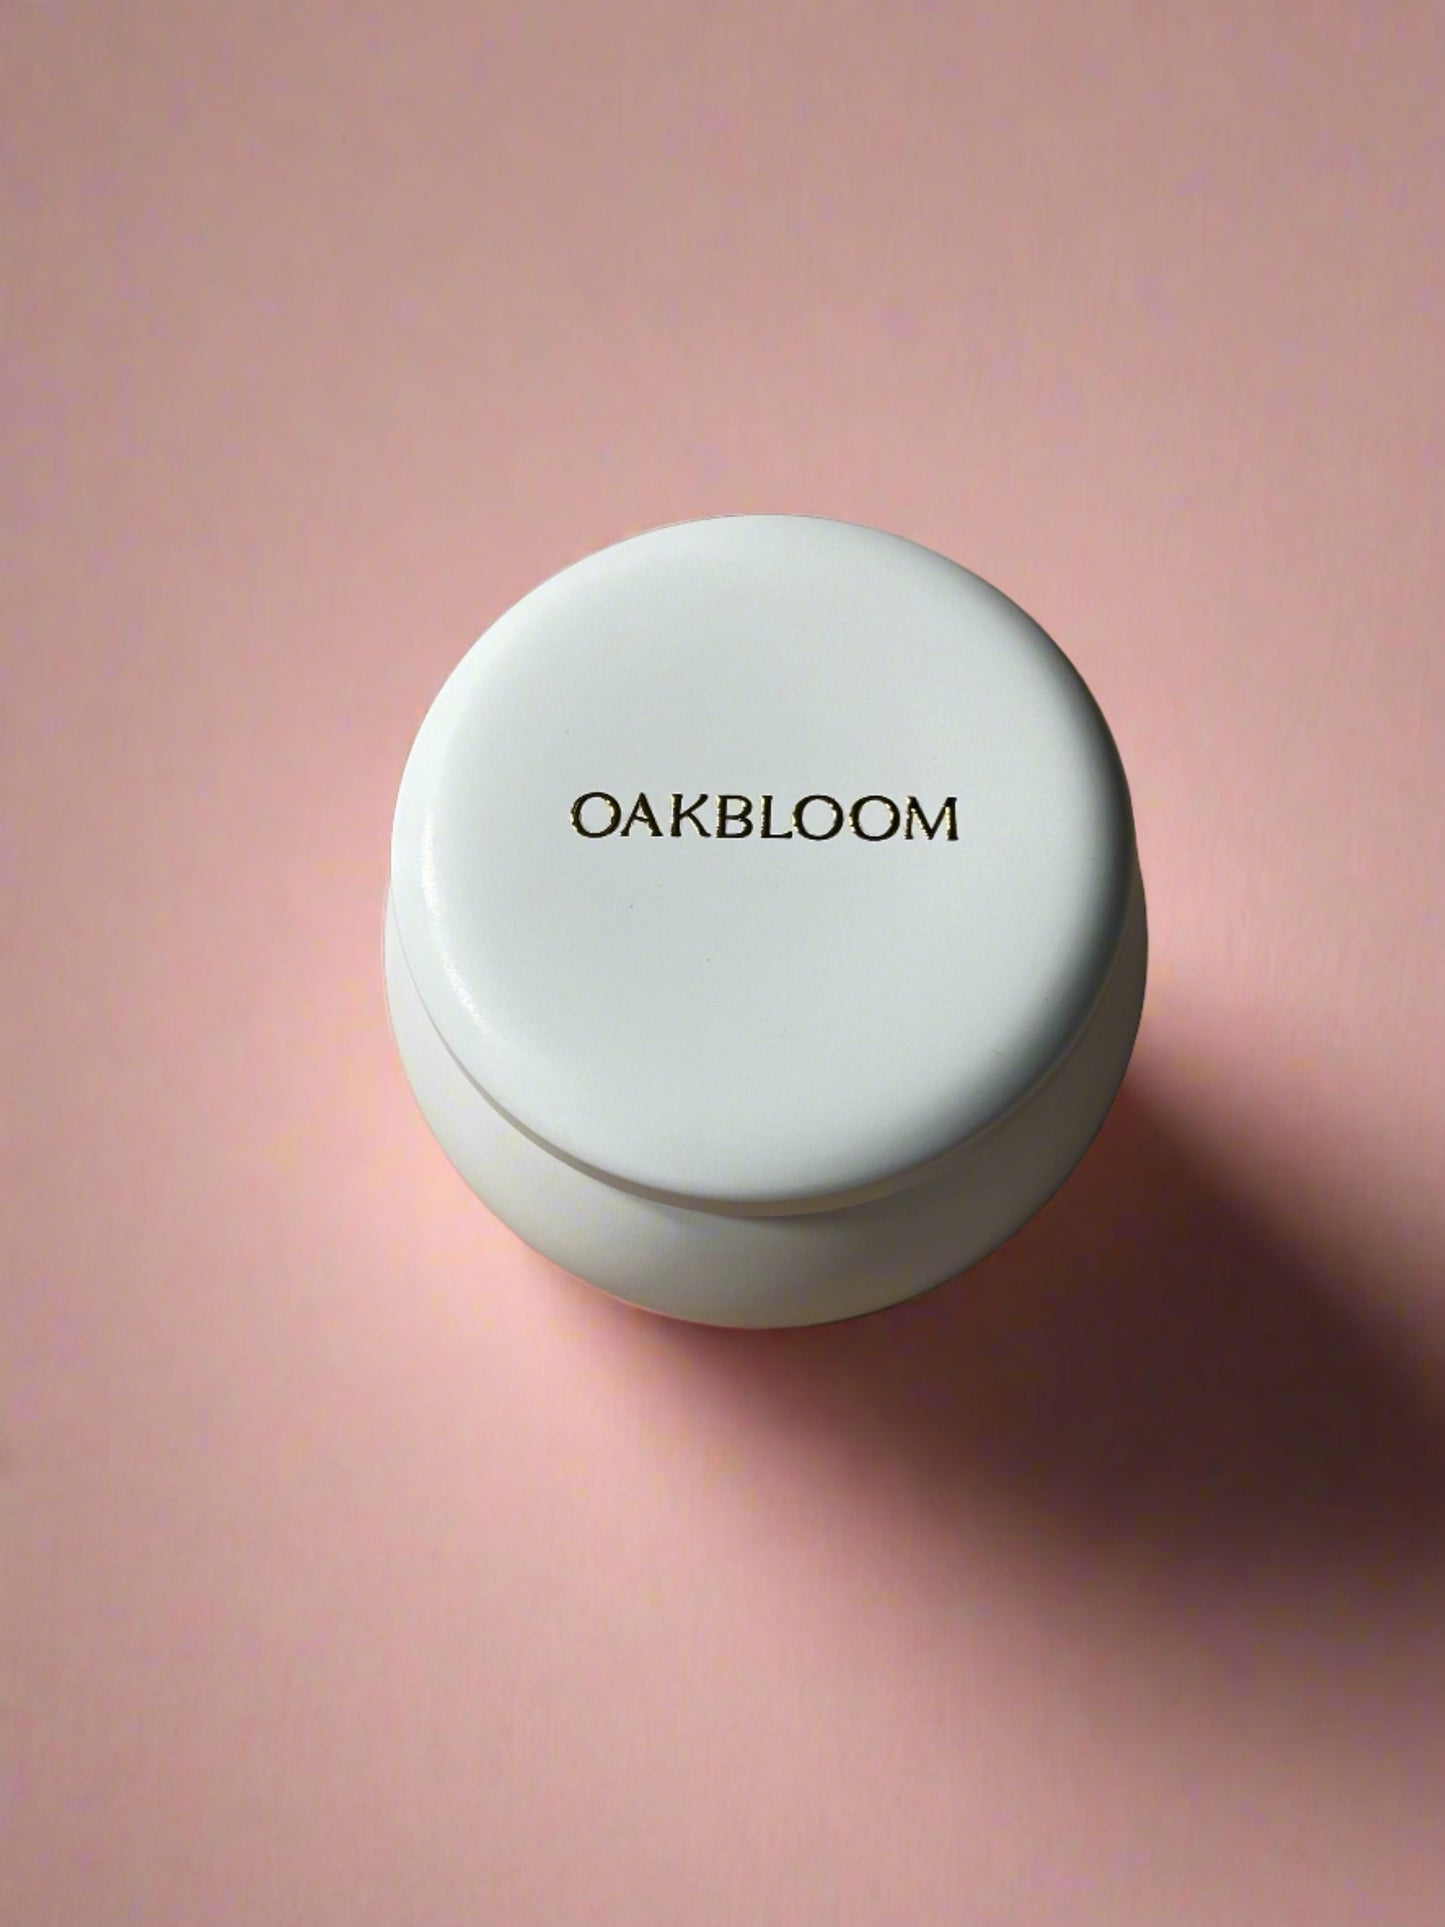 Oakbloom Mini Candle - 4 oz (wholesale)